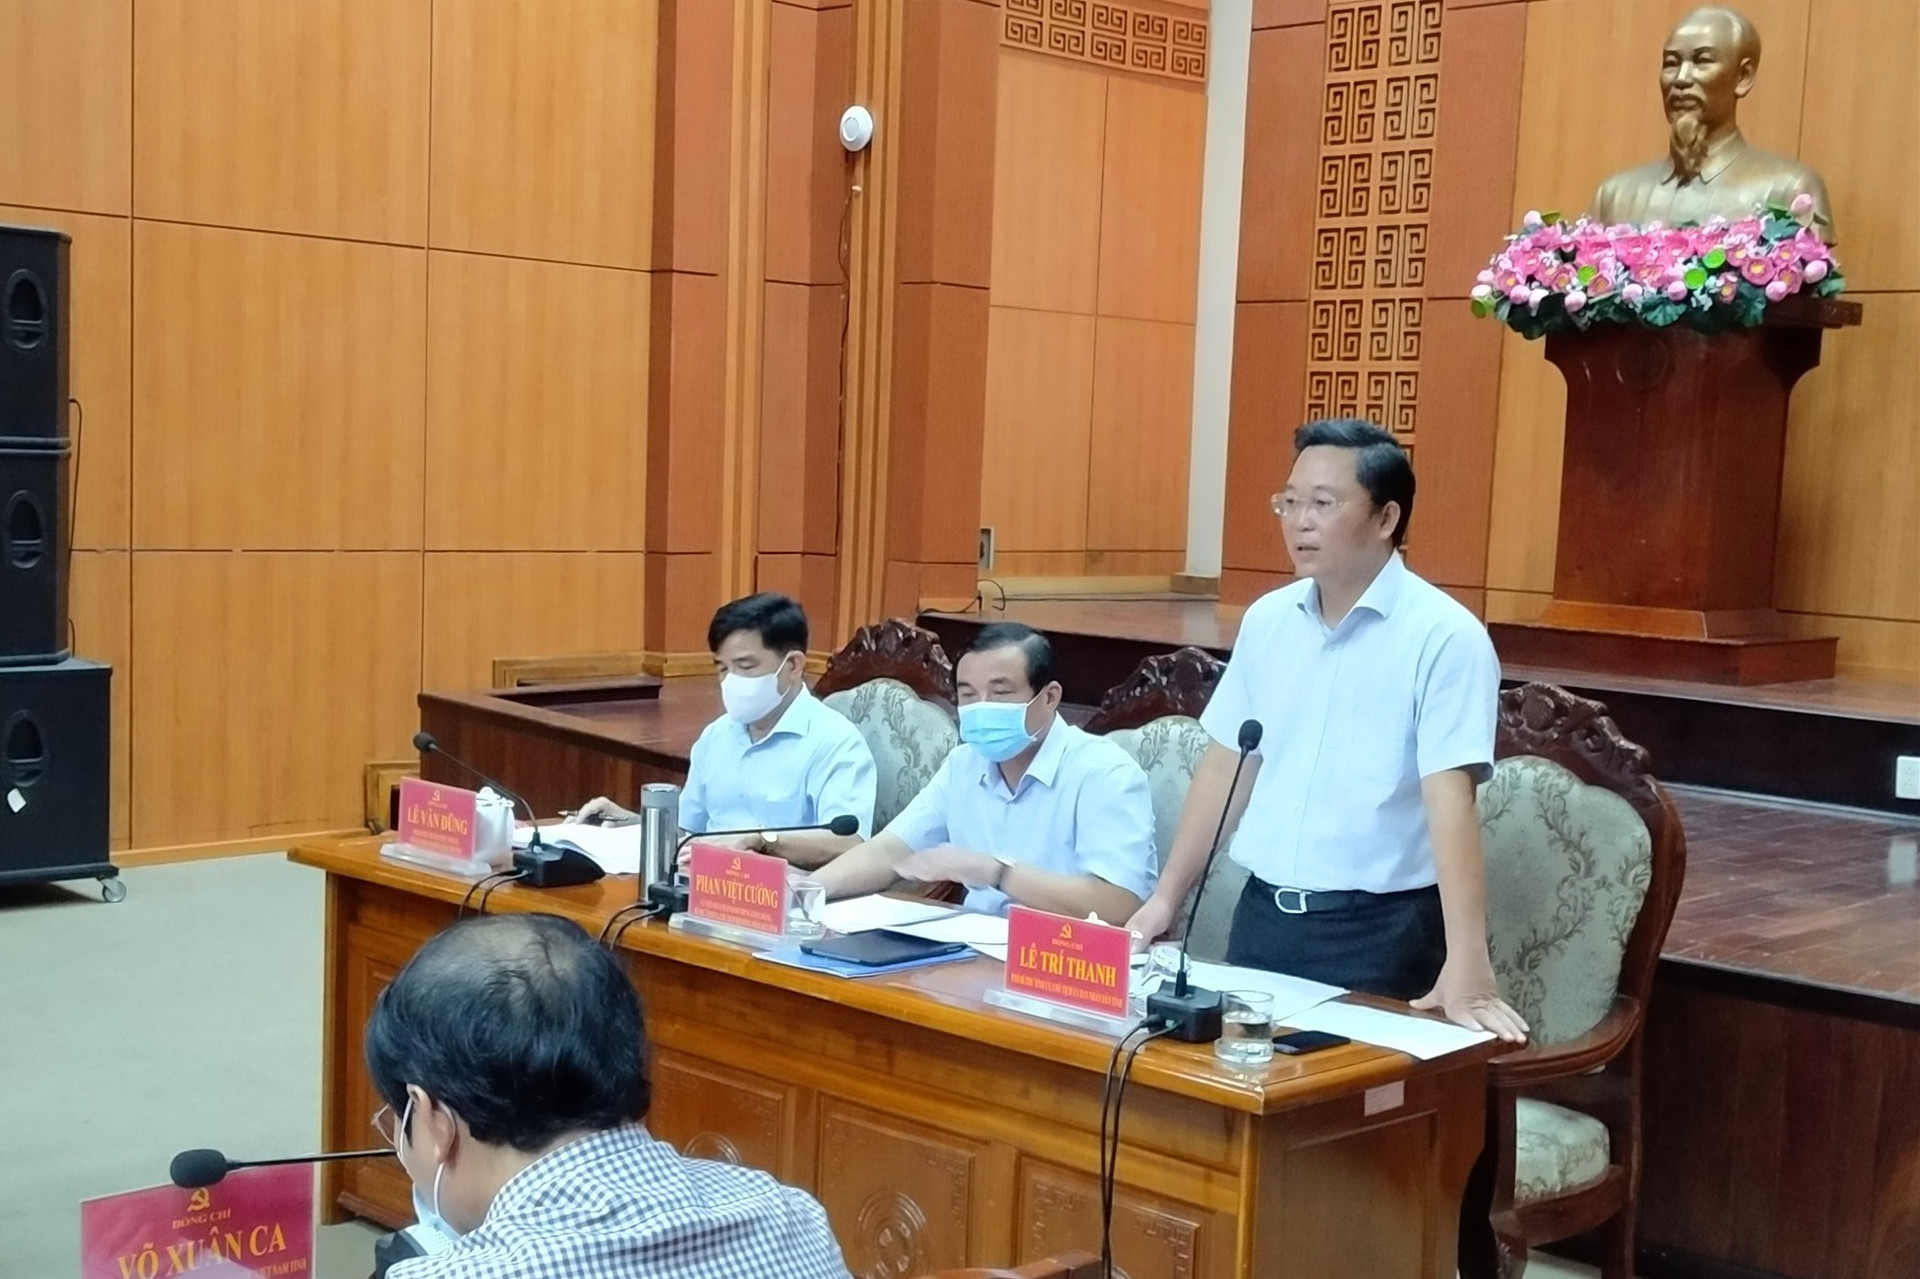 Chủ tịch UBND tỉnh Lê Trí Thanh điều hành thảo luận cùng người đứng đầu cấp ủy các địa phương tại hội nghị trực tuyến sáng nay 7.8. Ảnh: N.Đ